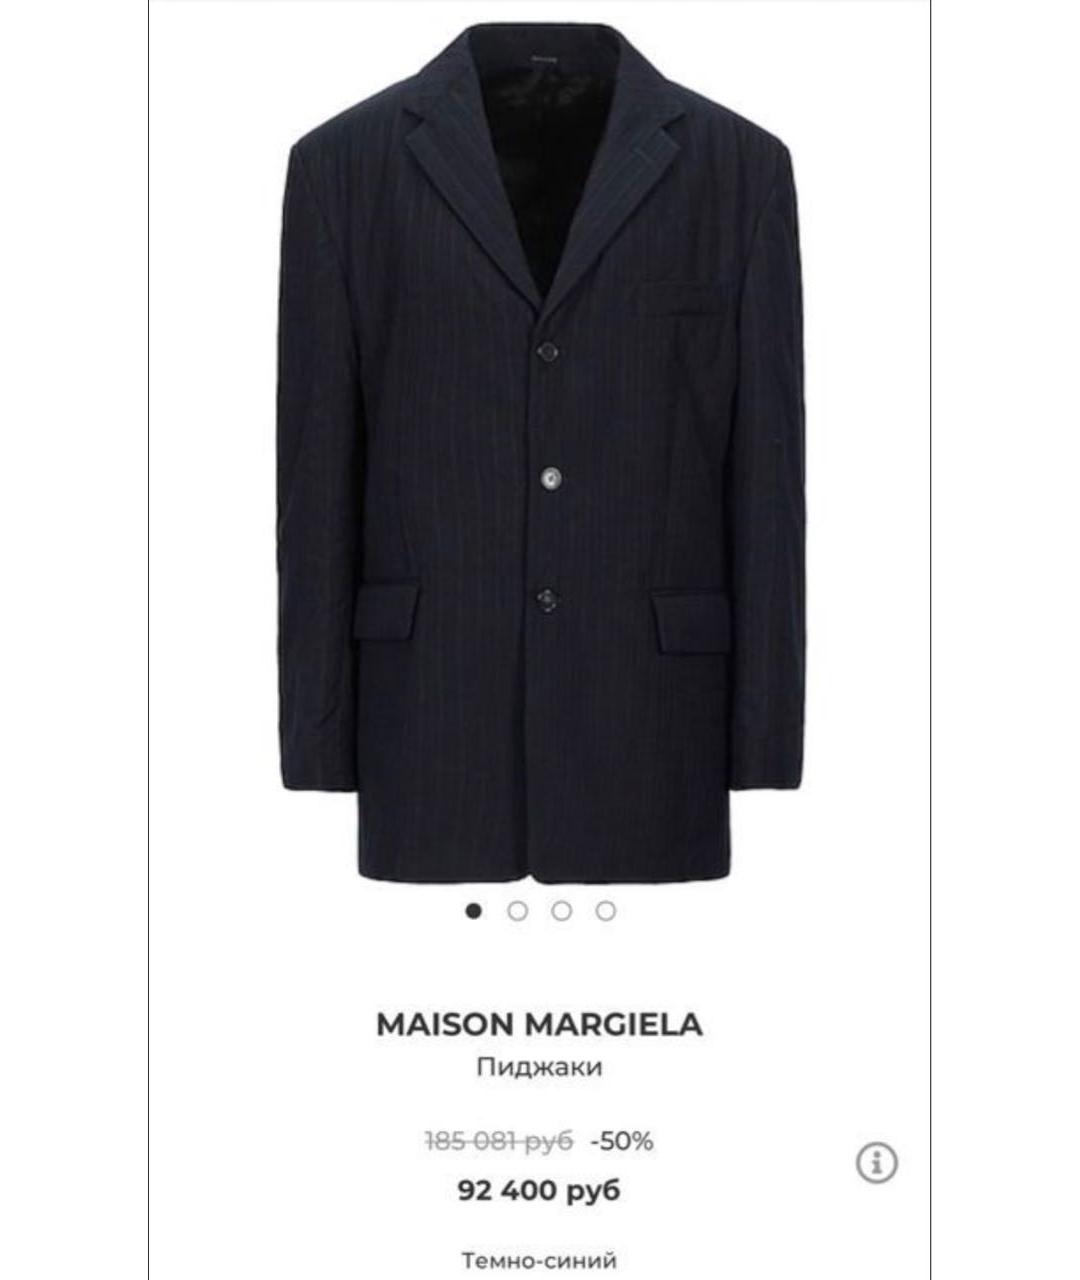 MAISON MARGIELA Темно-синий шерстяной жакет/пиджак, фото 4